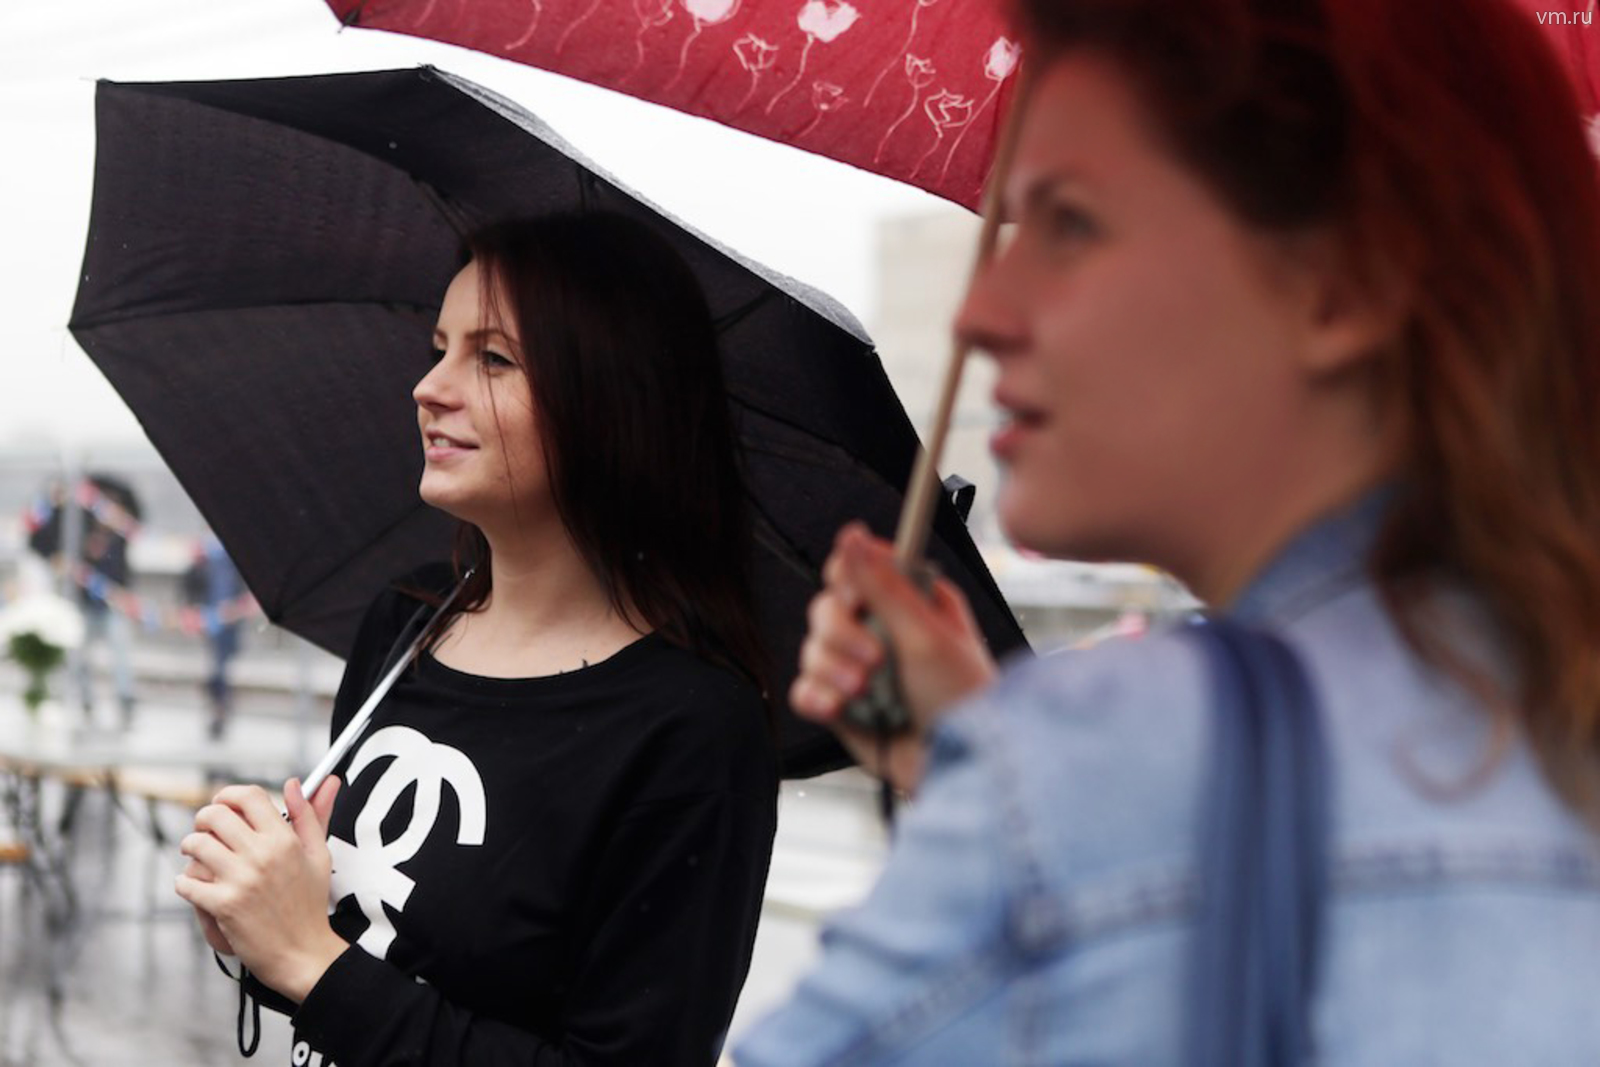 Прохладный дождливый день ждет москвичей 16 сентября